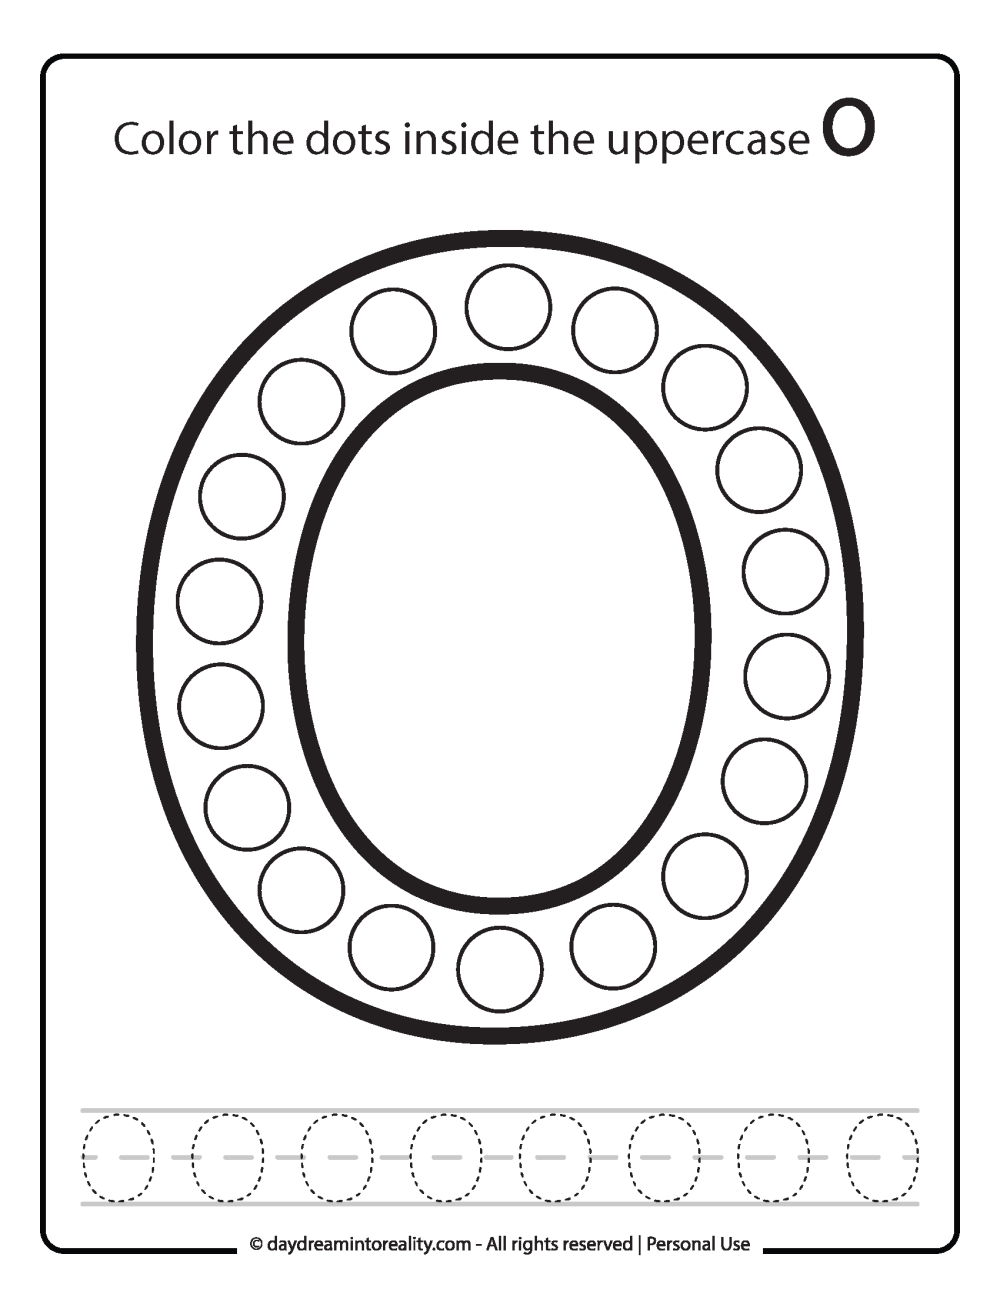 Uppercase "O" Dot Marker Worksheet Free Printable activity for kids (preschool, kindergarten)